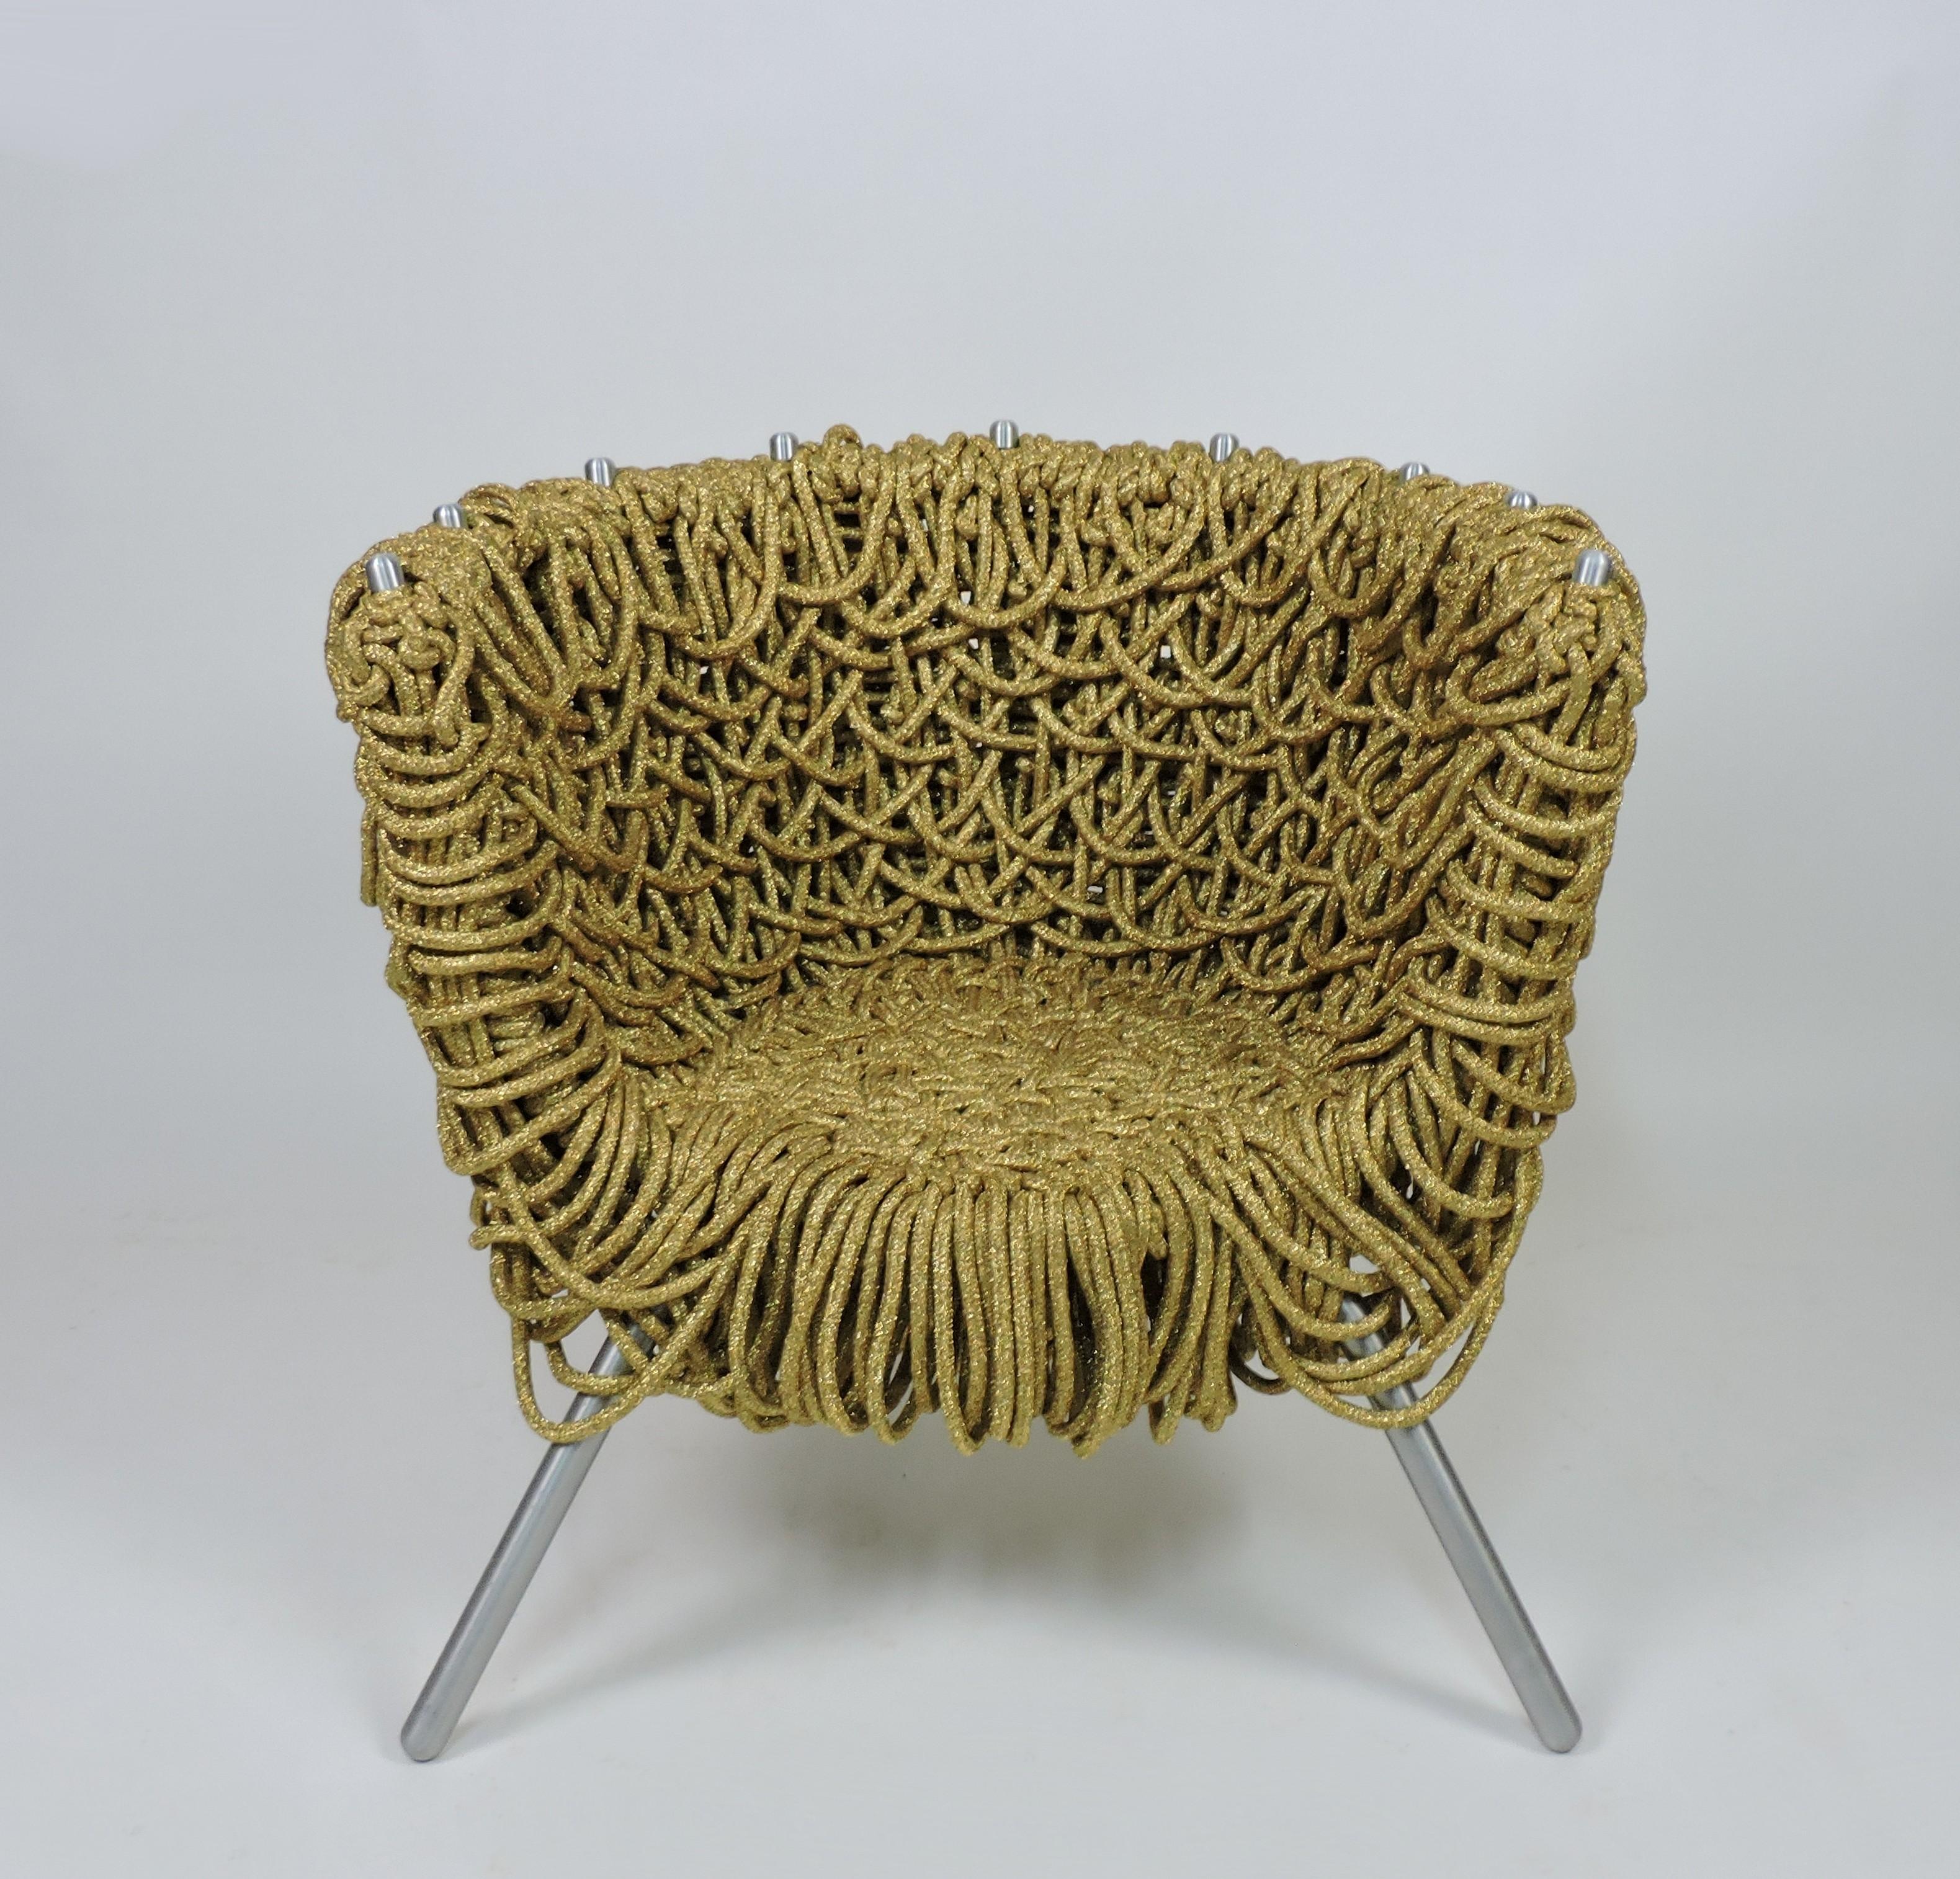 Fauteuil unique et emblématique conçu par les célèbres designers brésiliens Fernando et Humberto Campana,                et fabriqué en Italie par Edra. Cette chaise est faite de corde métallique dorée, de fer et d'aluminium. La chaise longue